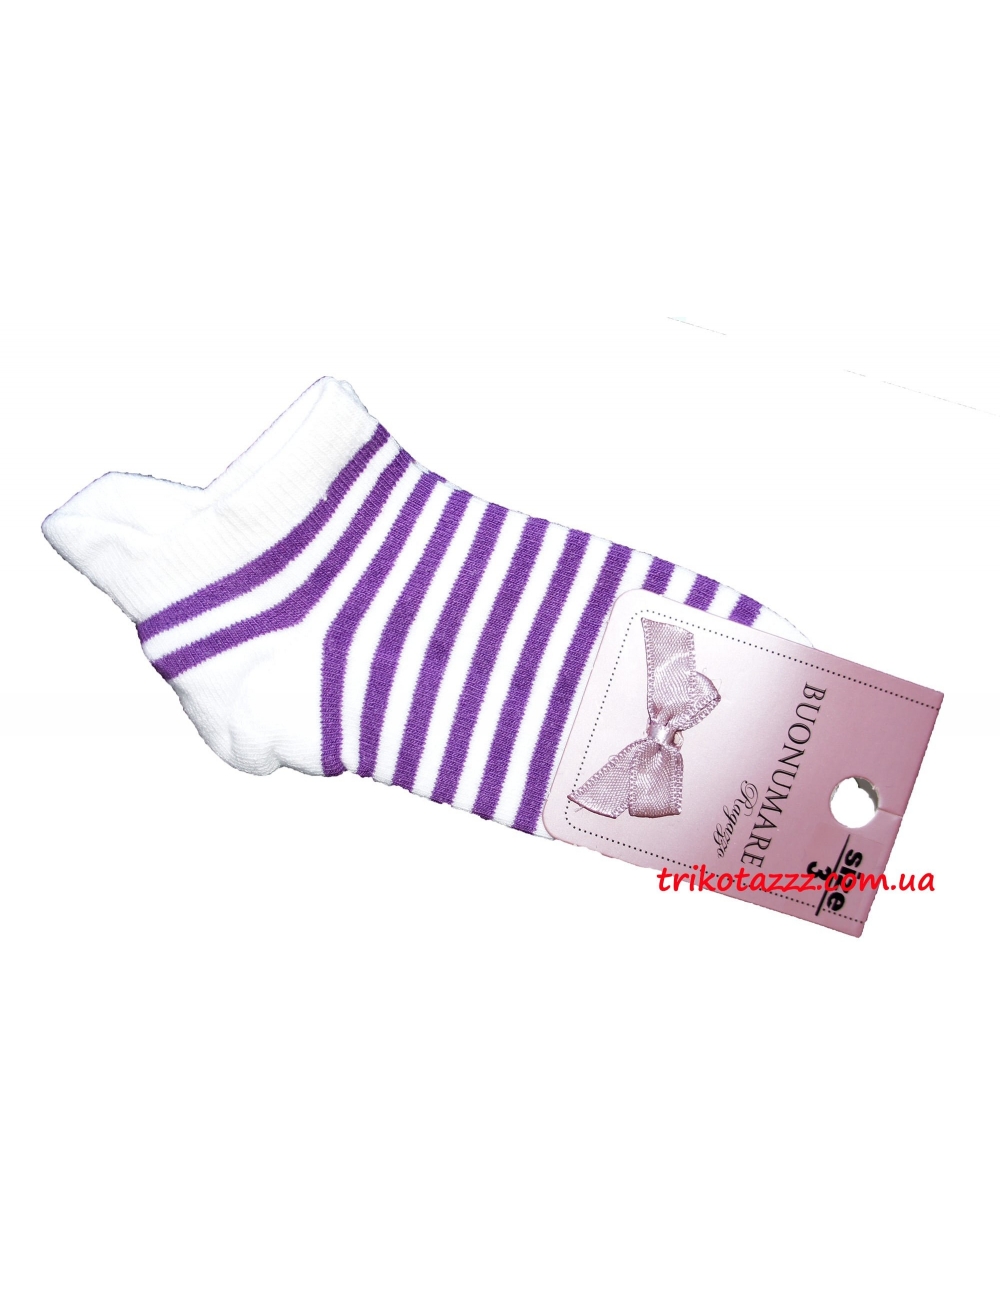 Носки для девочек в кроссовки тм"Buonumare" полоска фиолетовая